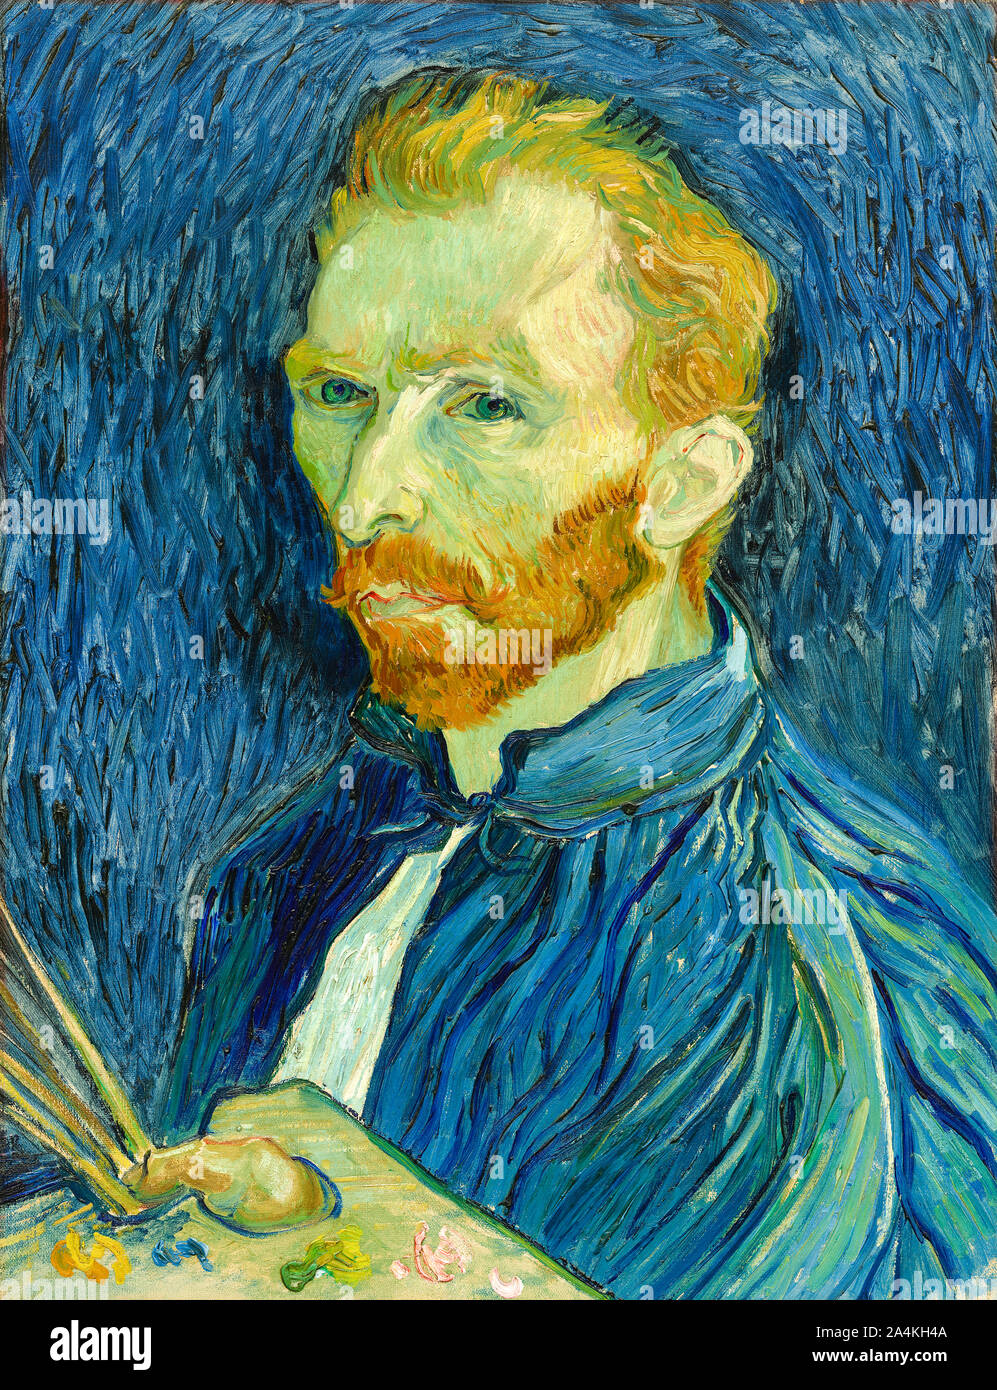 Autoportrait de Vincent van Gogh (1853-1890) peintre post-impressionniste hollandais peint dans le Saint-Paul-de-Mausole près d'asile en 1889 décrite comme un artiste. La peinture est maintenant dans la collection de la National Gallery of Art, Washington, D.C., USA. Banque D'Images